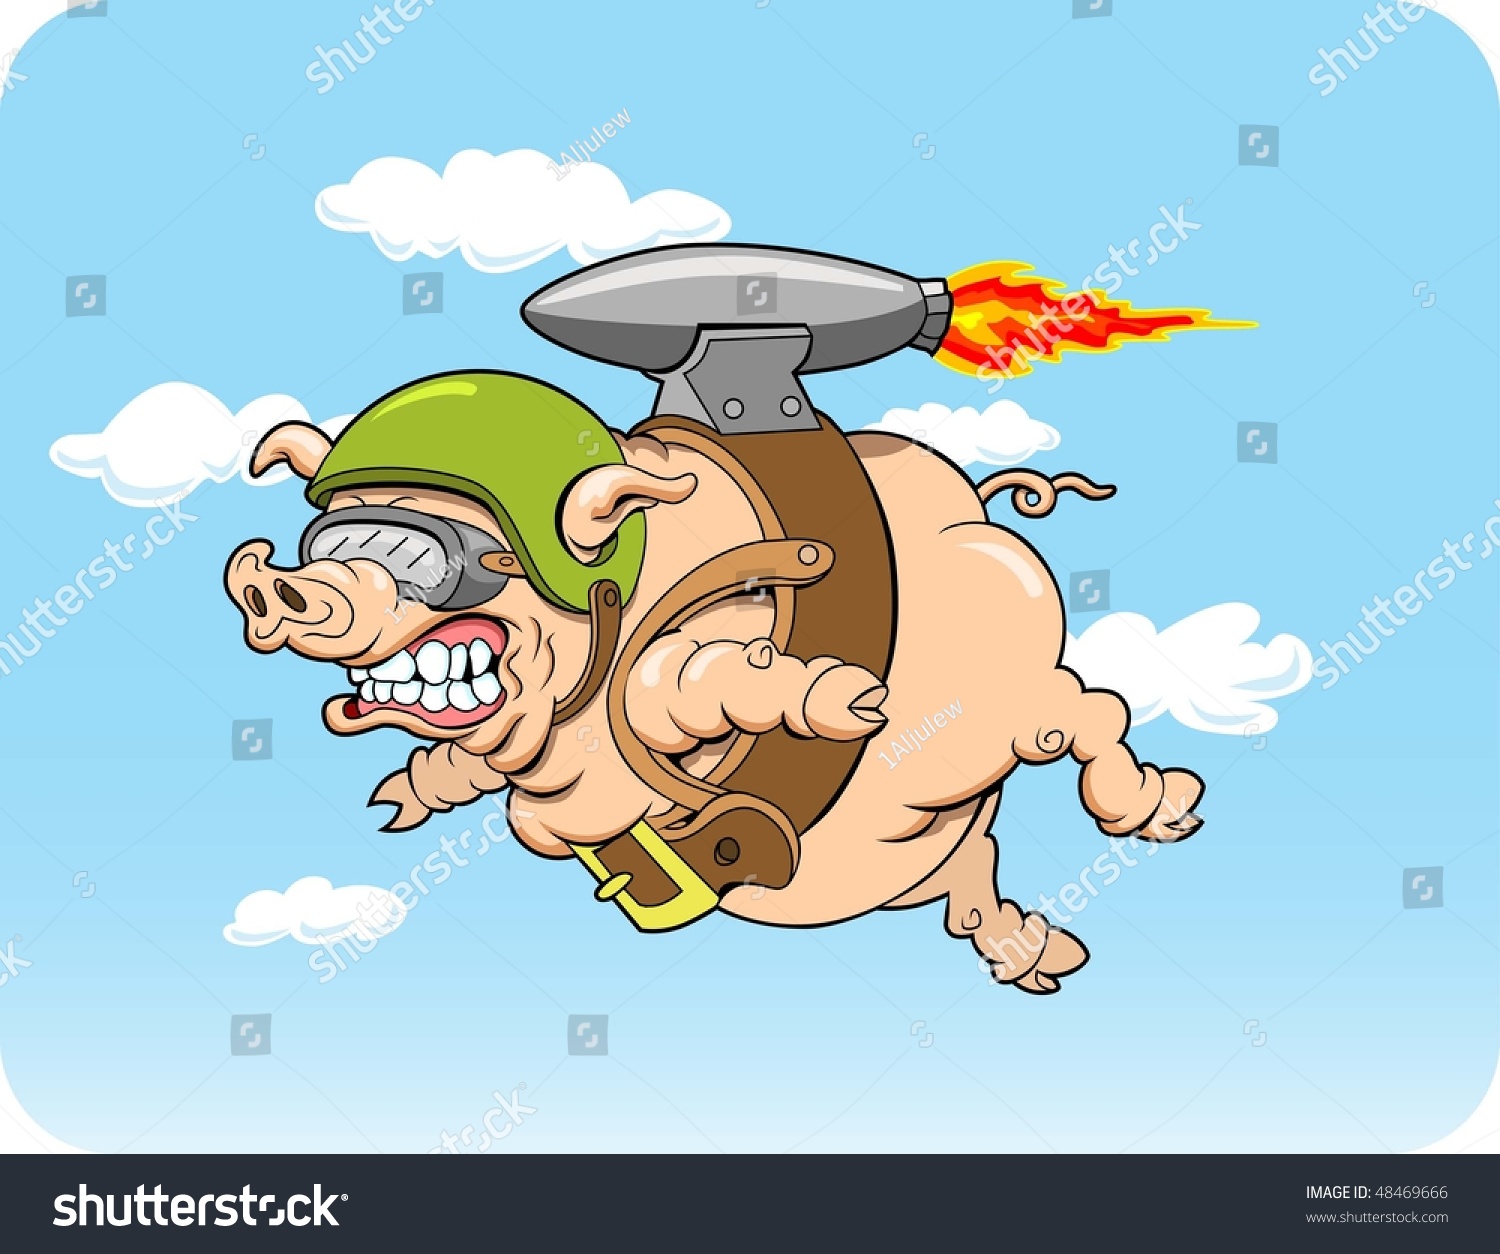 This Flying Pig Jet Pack Illustration Stock Vector 48469666 Shutterstock